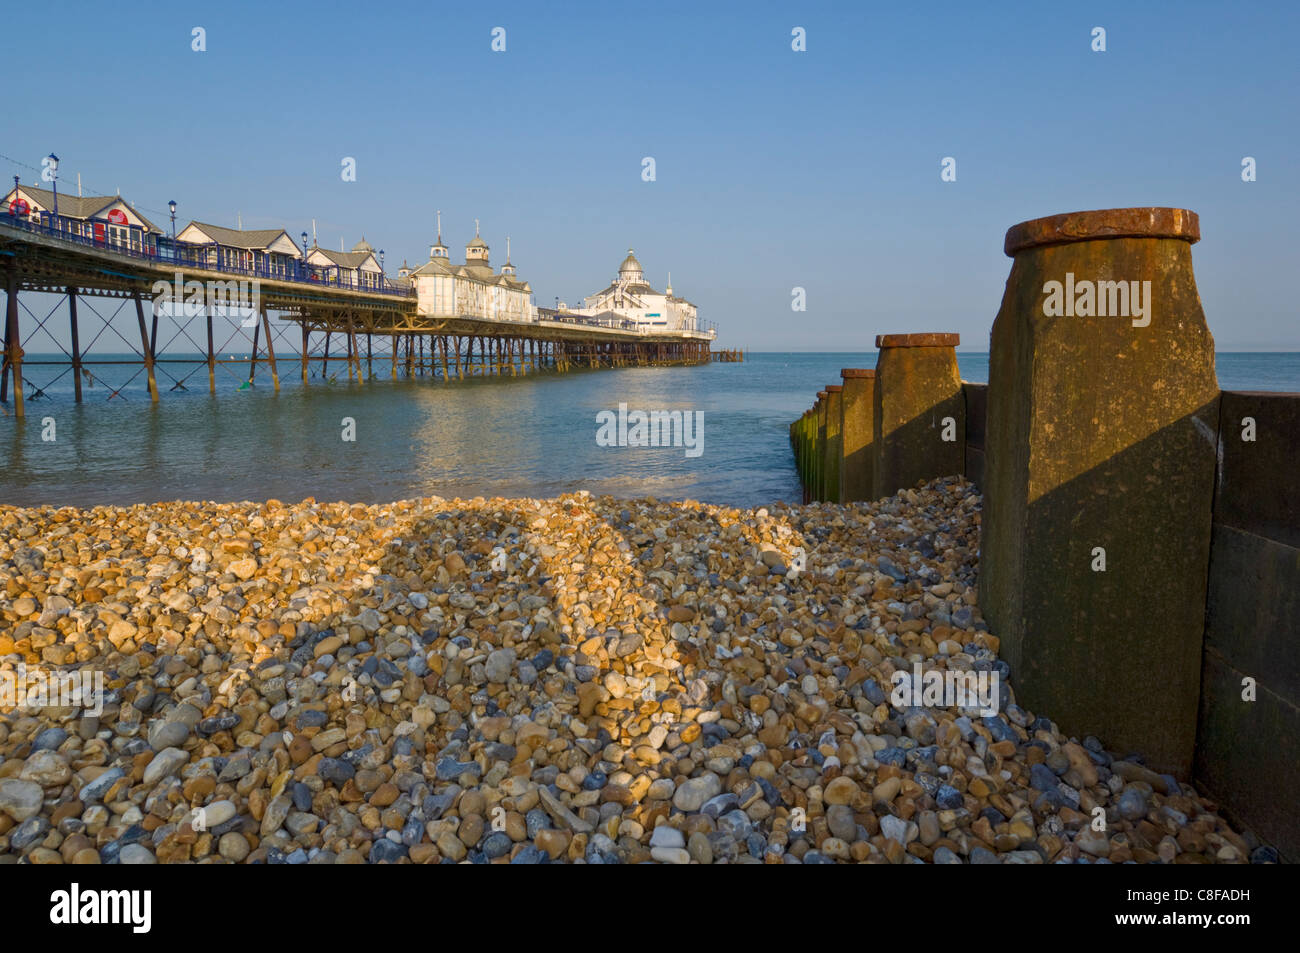 Eastbourne Pier, plage et épis, Eastbourne, East Sussex, Angleterre, Royaume-Uni Banque D'Images